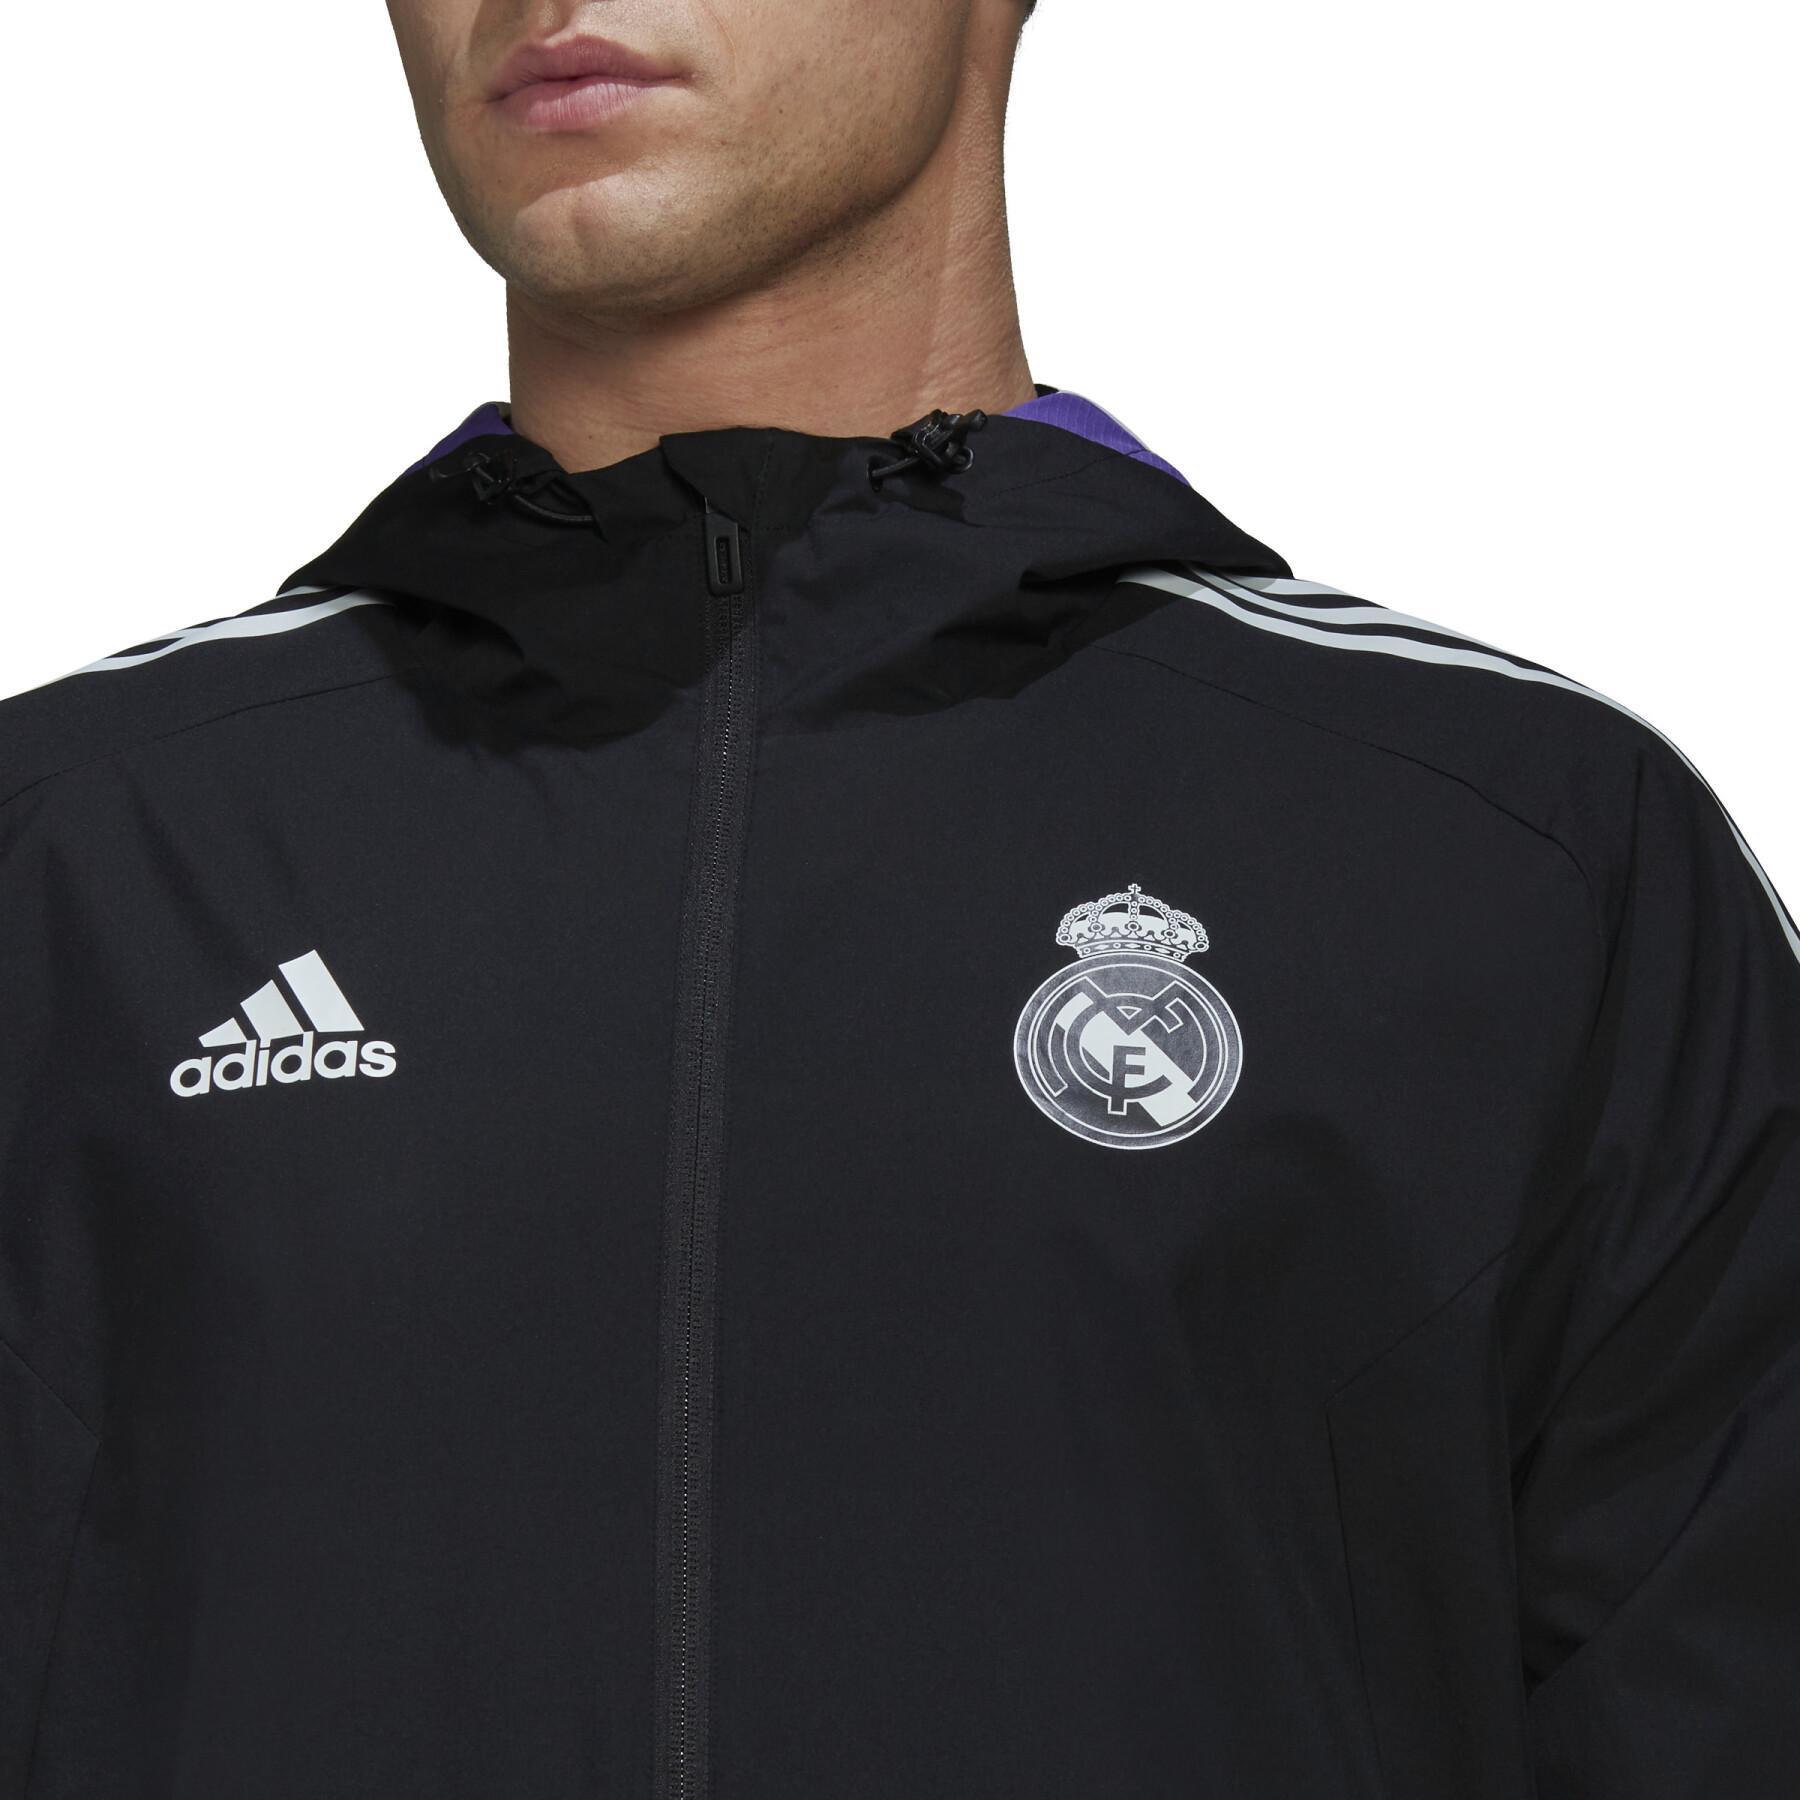 Track suit jas Real Madrid 2022/23